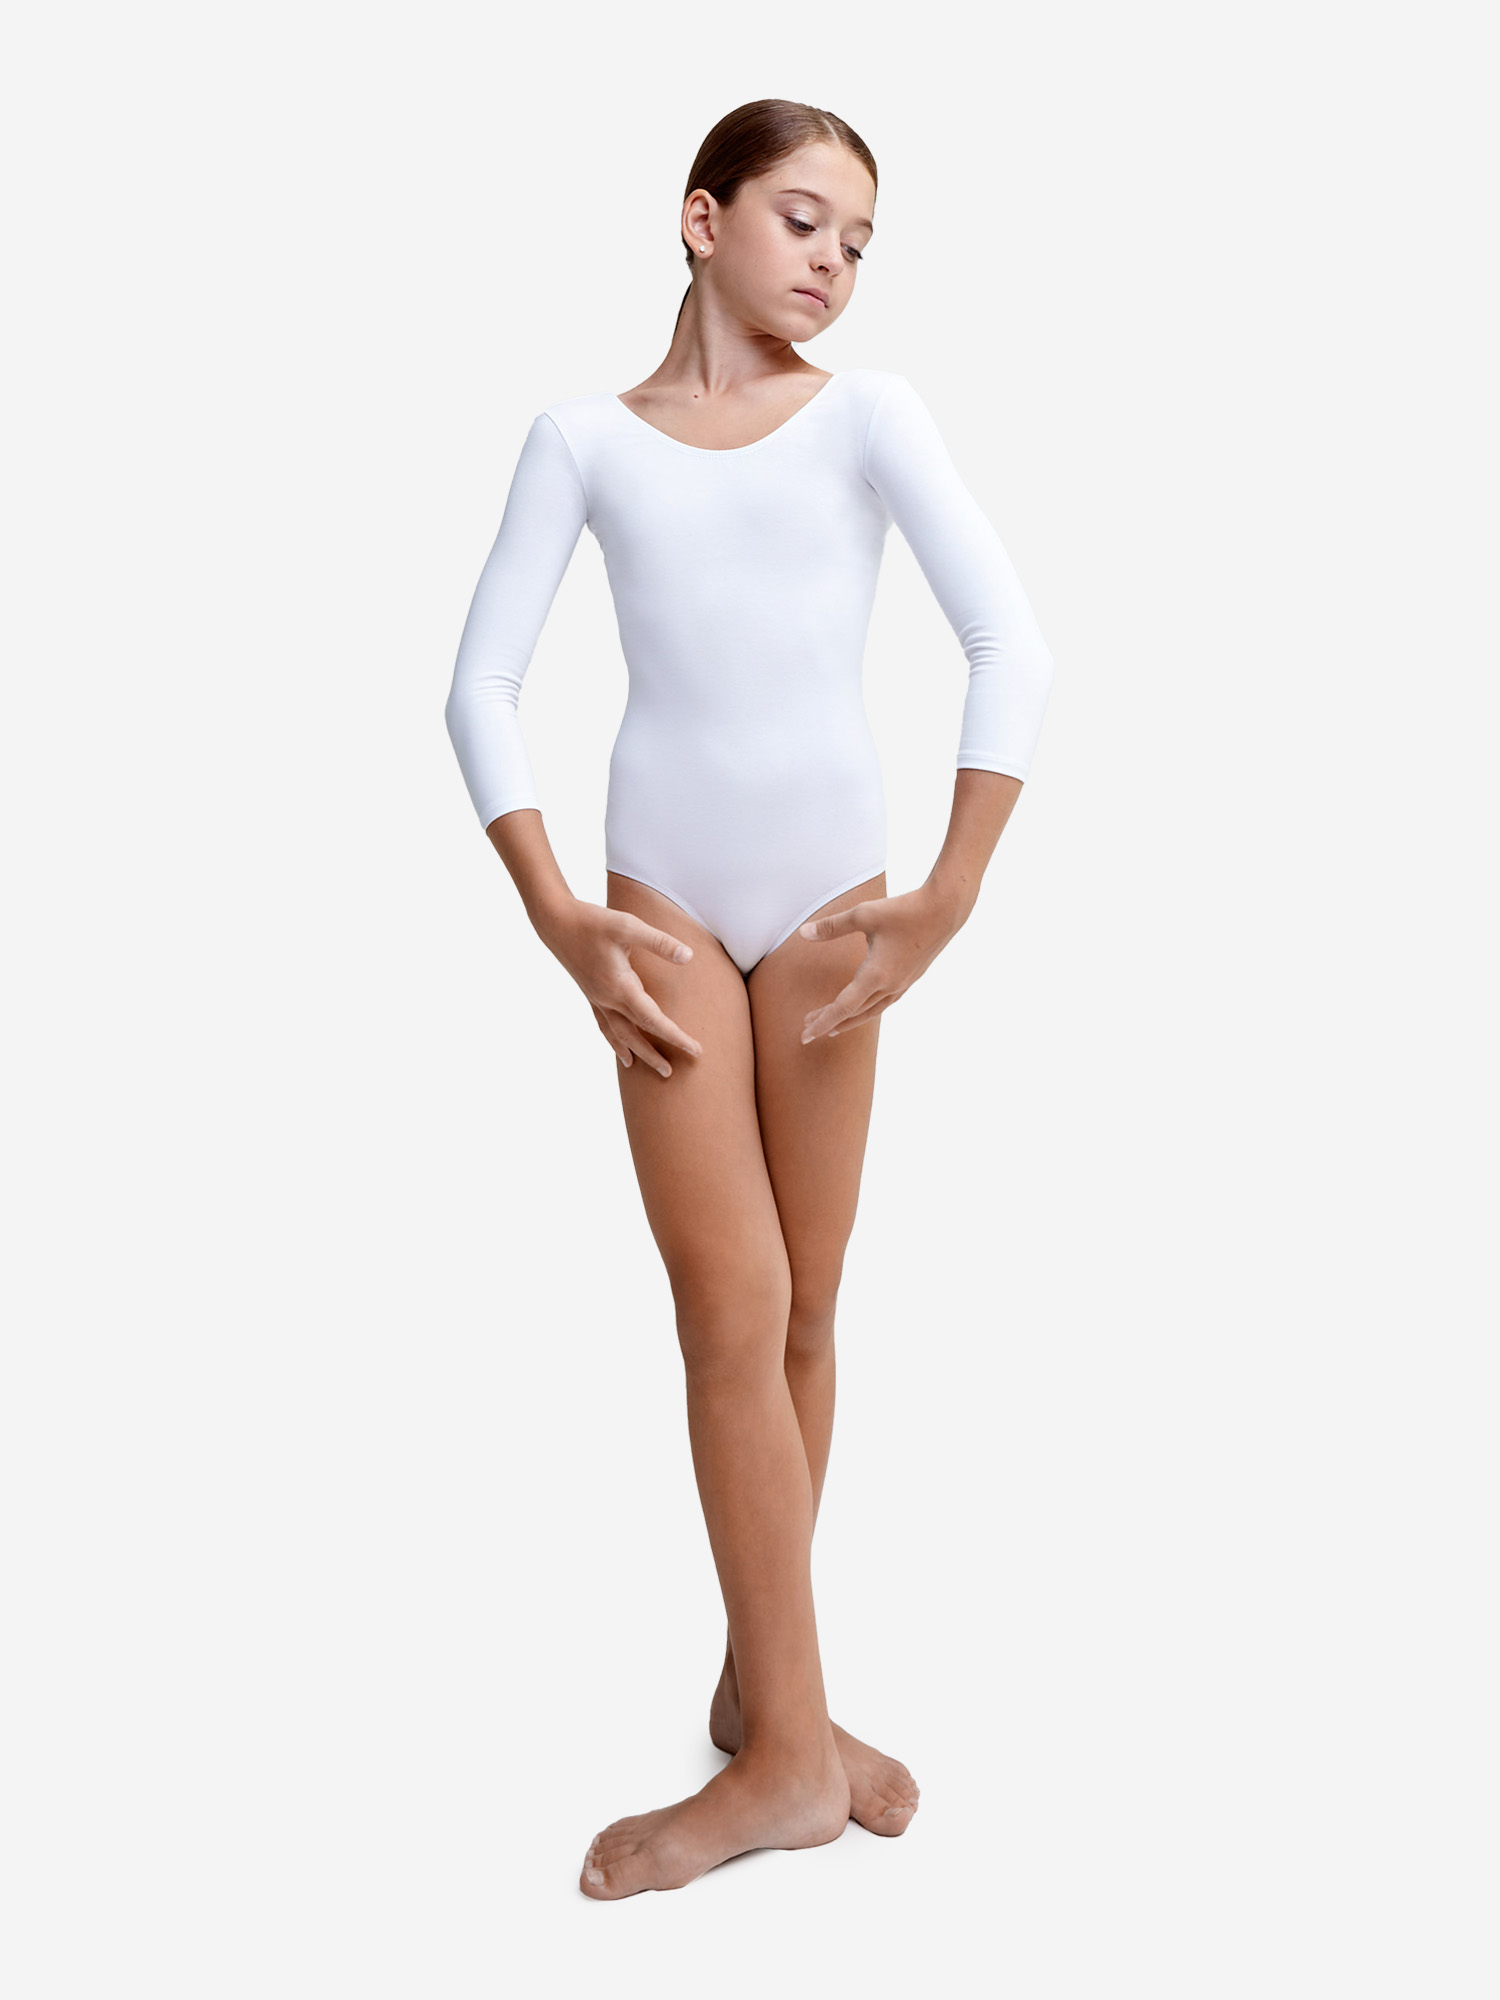 Купальник гимнастический Belkina без юбки для танцев и тренировок, Белый купальник гимнастический belkina с юбкой для танцев и тренировок